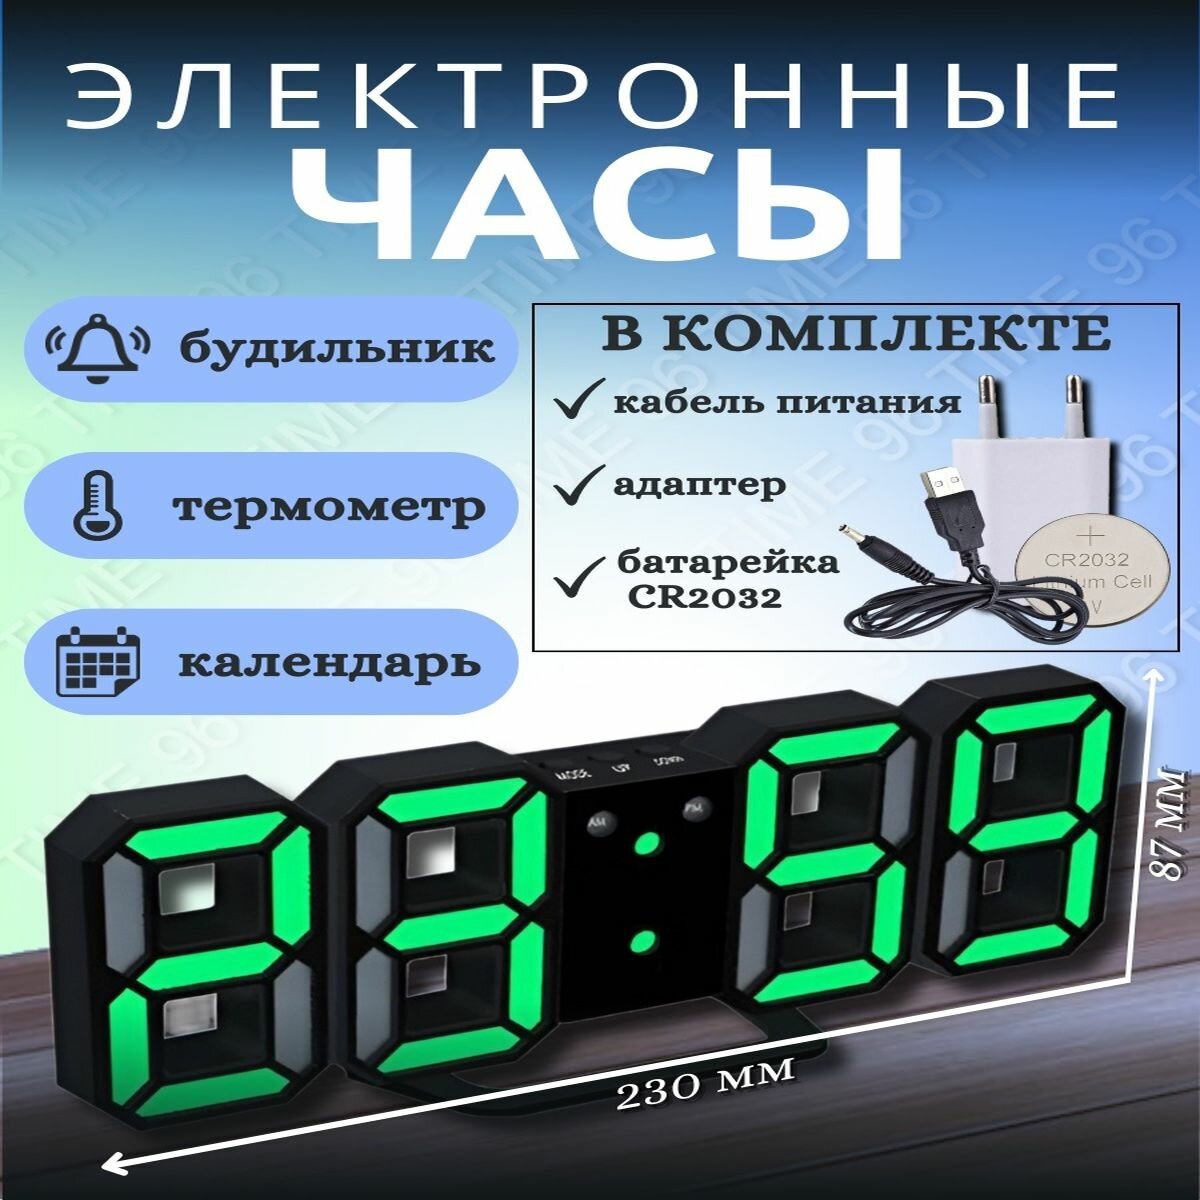 Настенные, настольные, электронные часы будильник, с календарем и термометром.